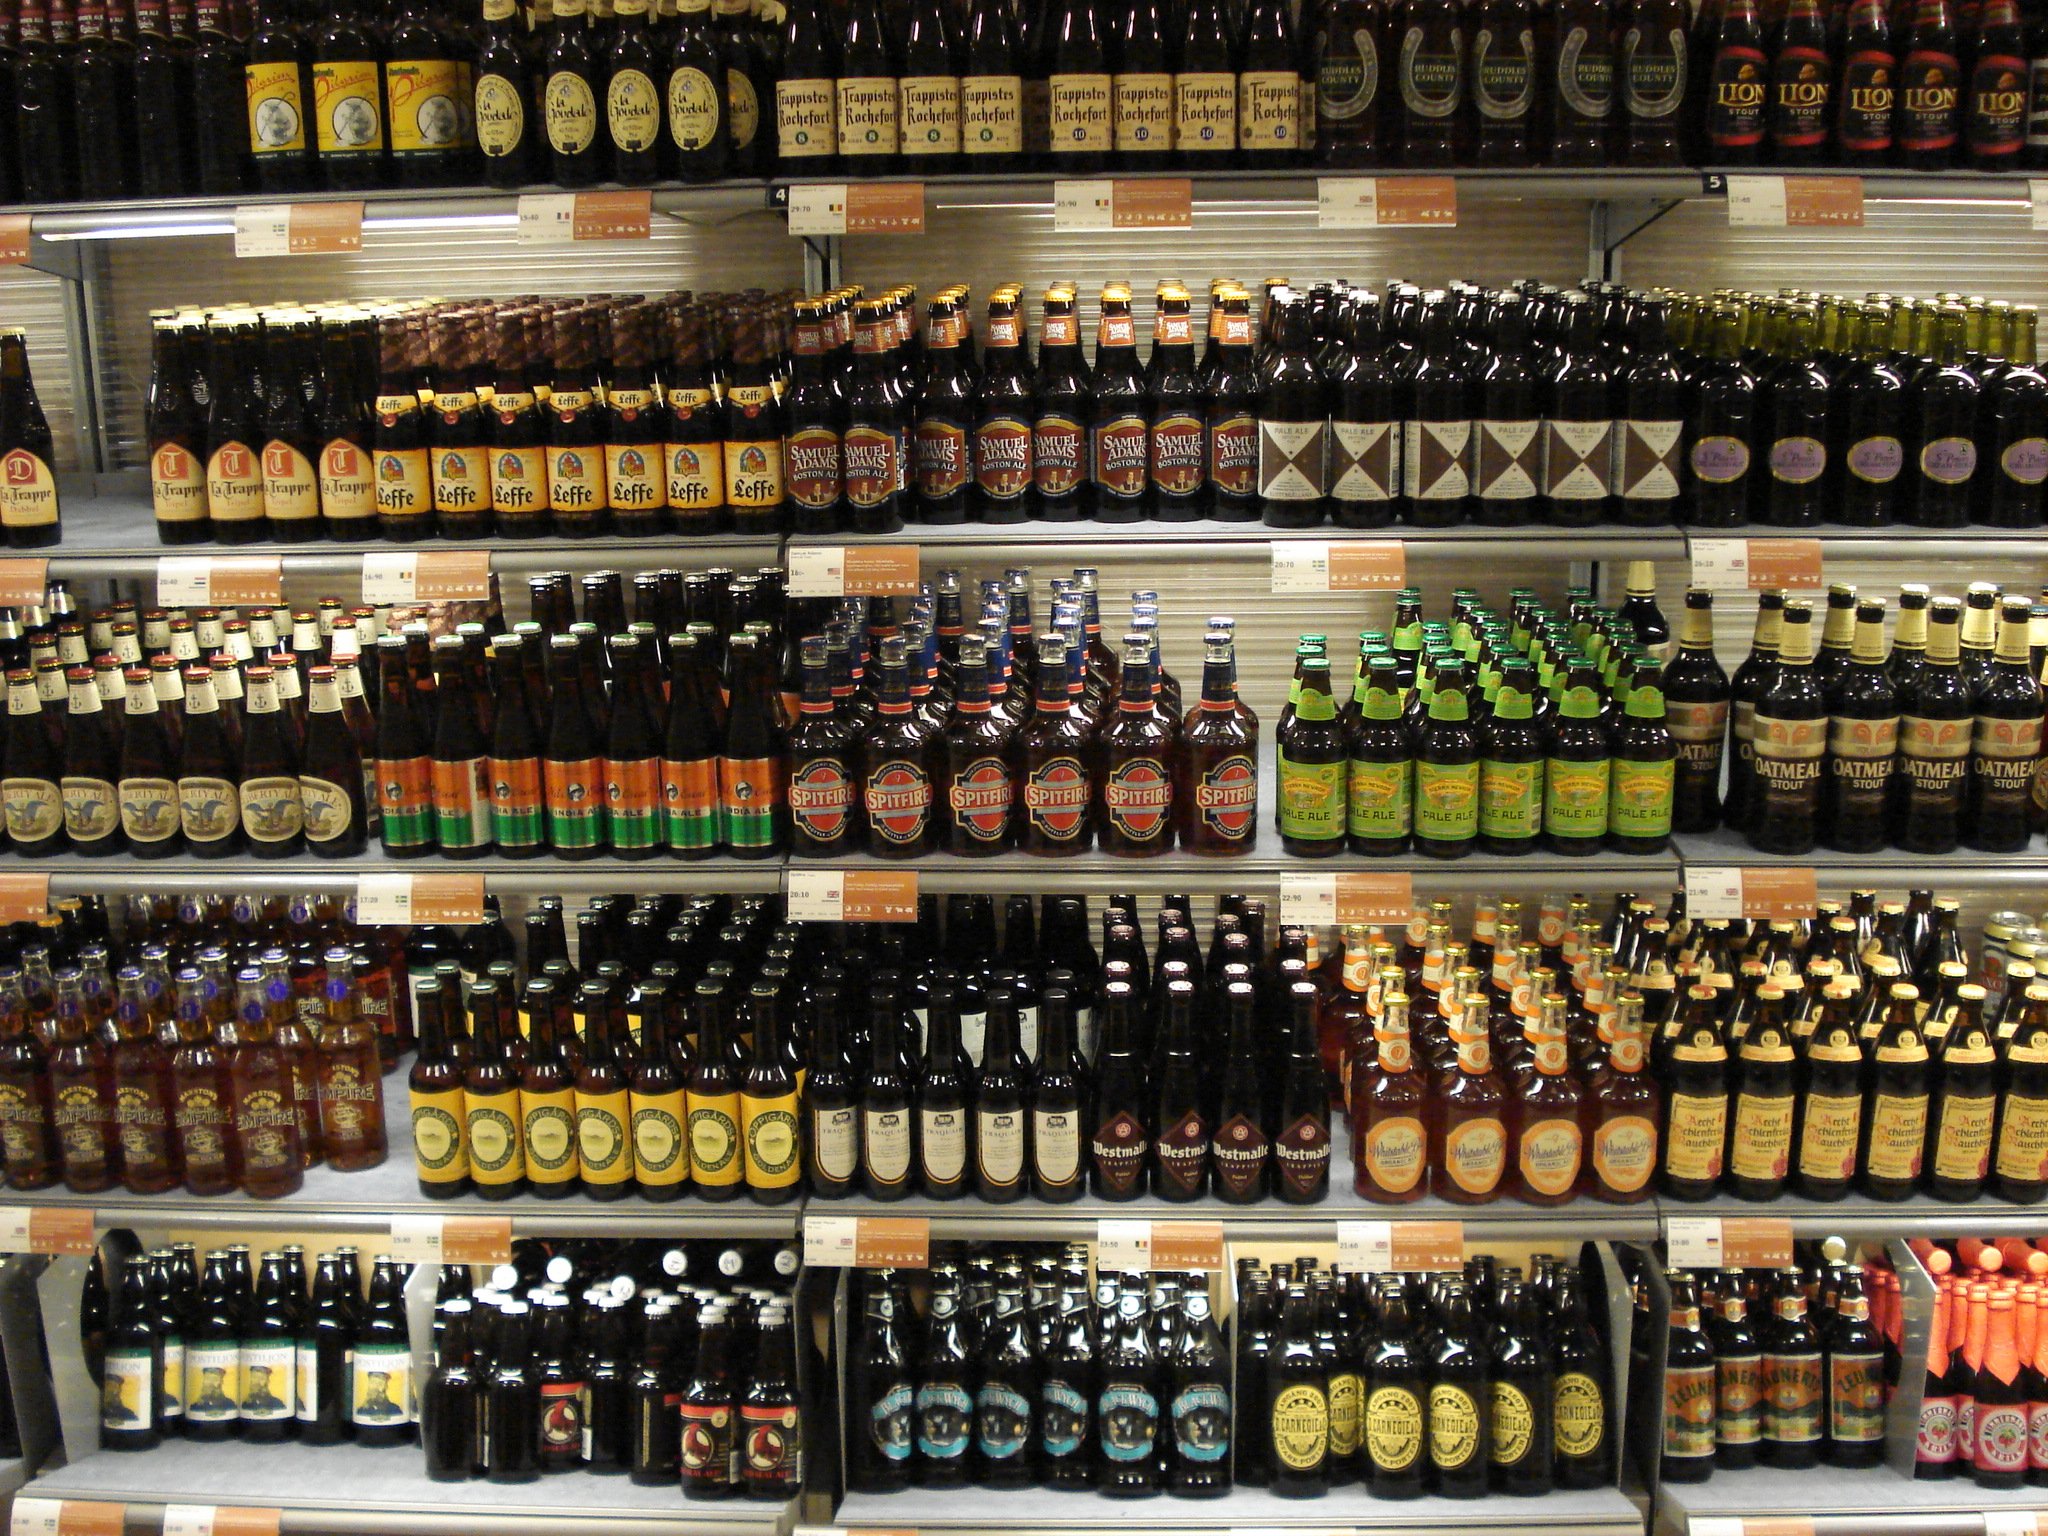 systemets beer brands.jpg?resize=412,275 - Un village allemand confisque le stock de bières pour combattre un festival néo-nazi